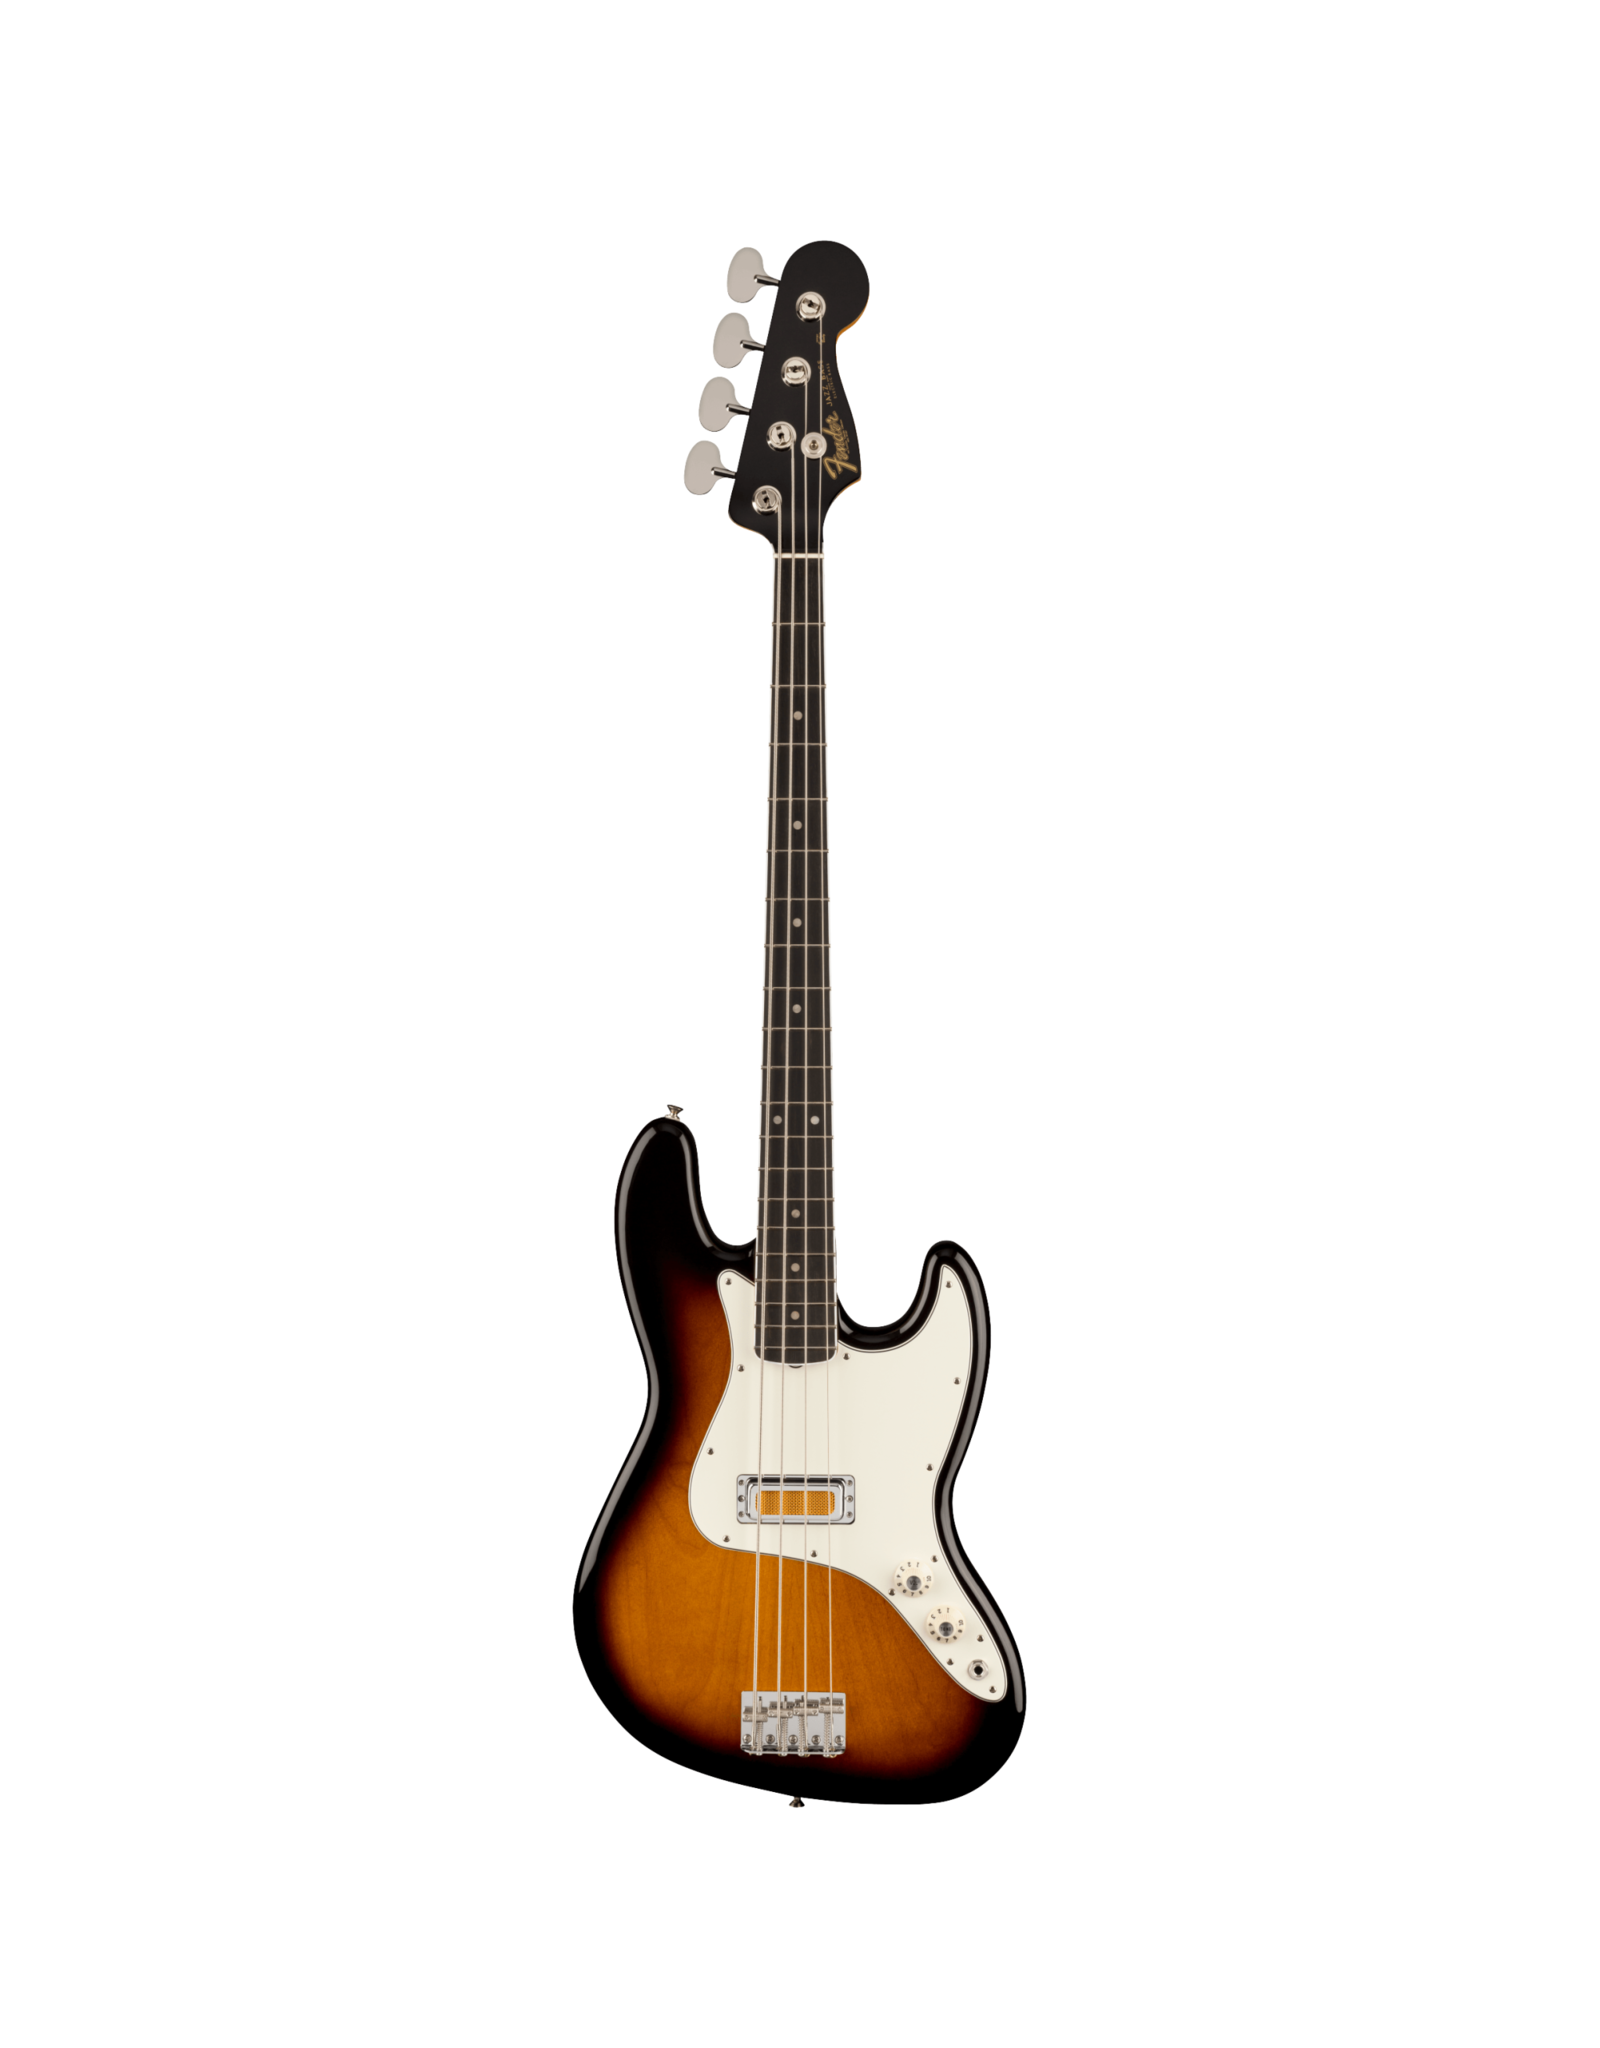 Fender Fender Gold Foil Jazz Bass, Ebony Fingerboard, 2-Color Sunburst w/Gig Bag